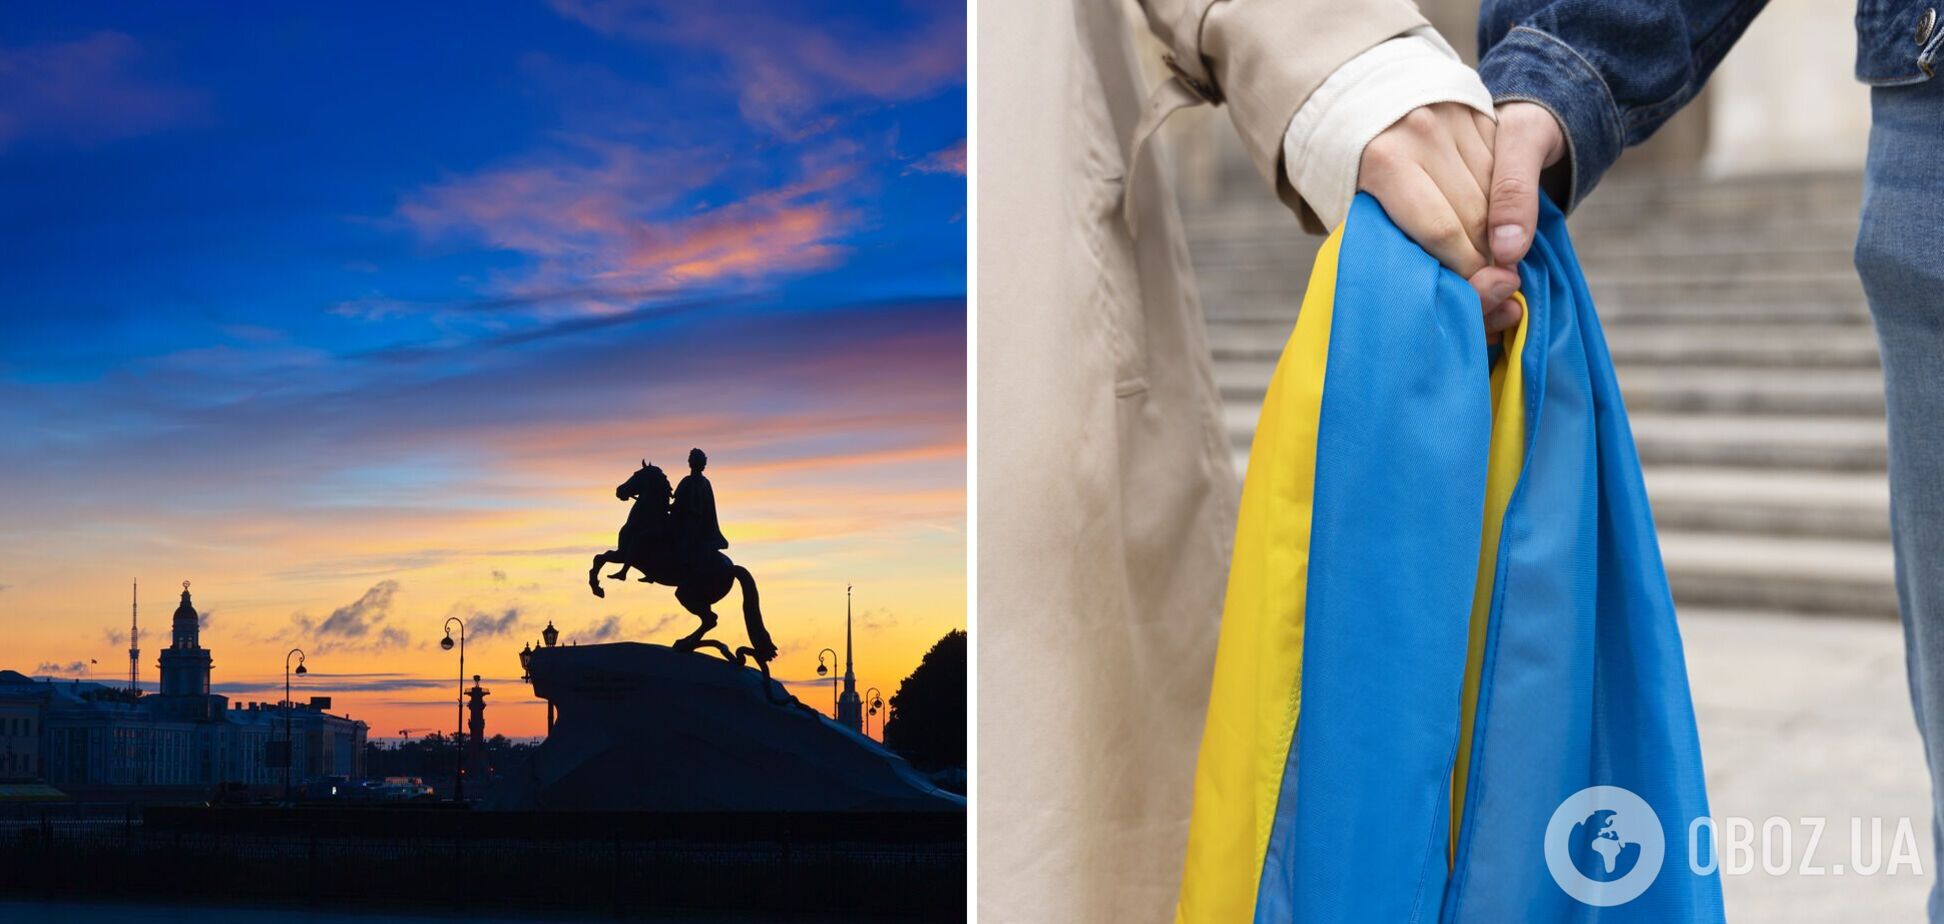 Необычные монументы Украины: какие достопримечательности стоит увидеть каждому